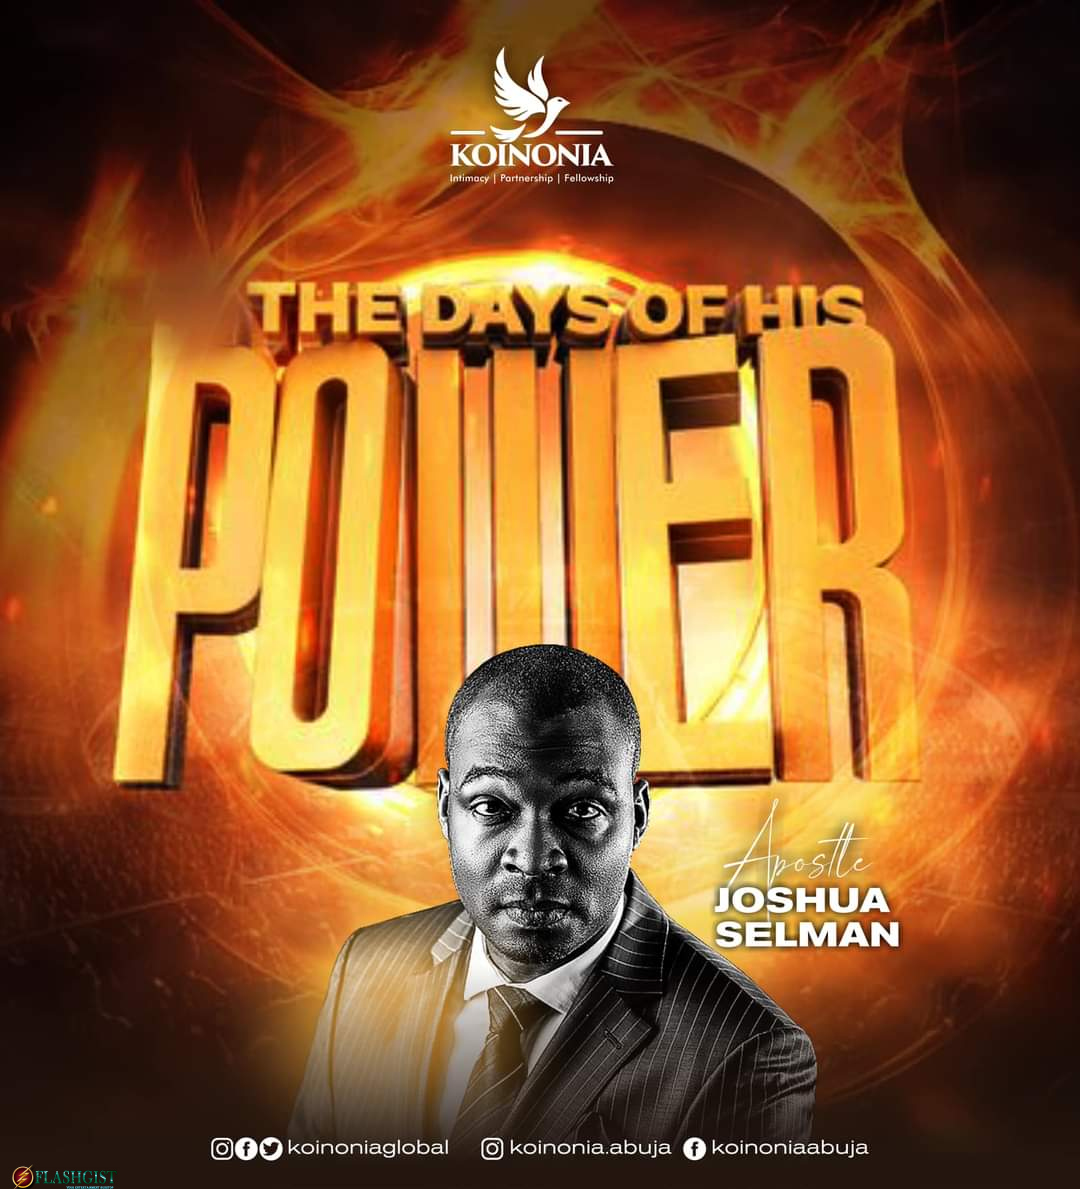 The Days of His Power – Apostle Joshua Selman (Koinonia Abuja)